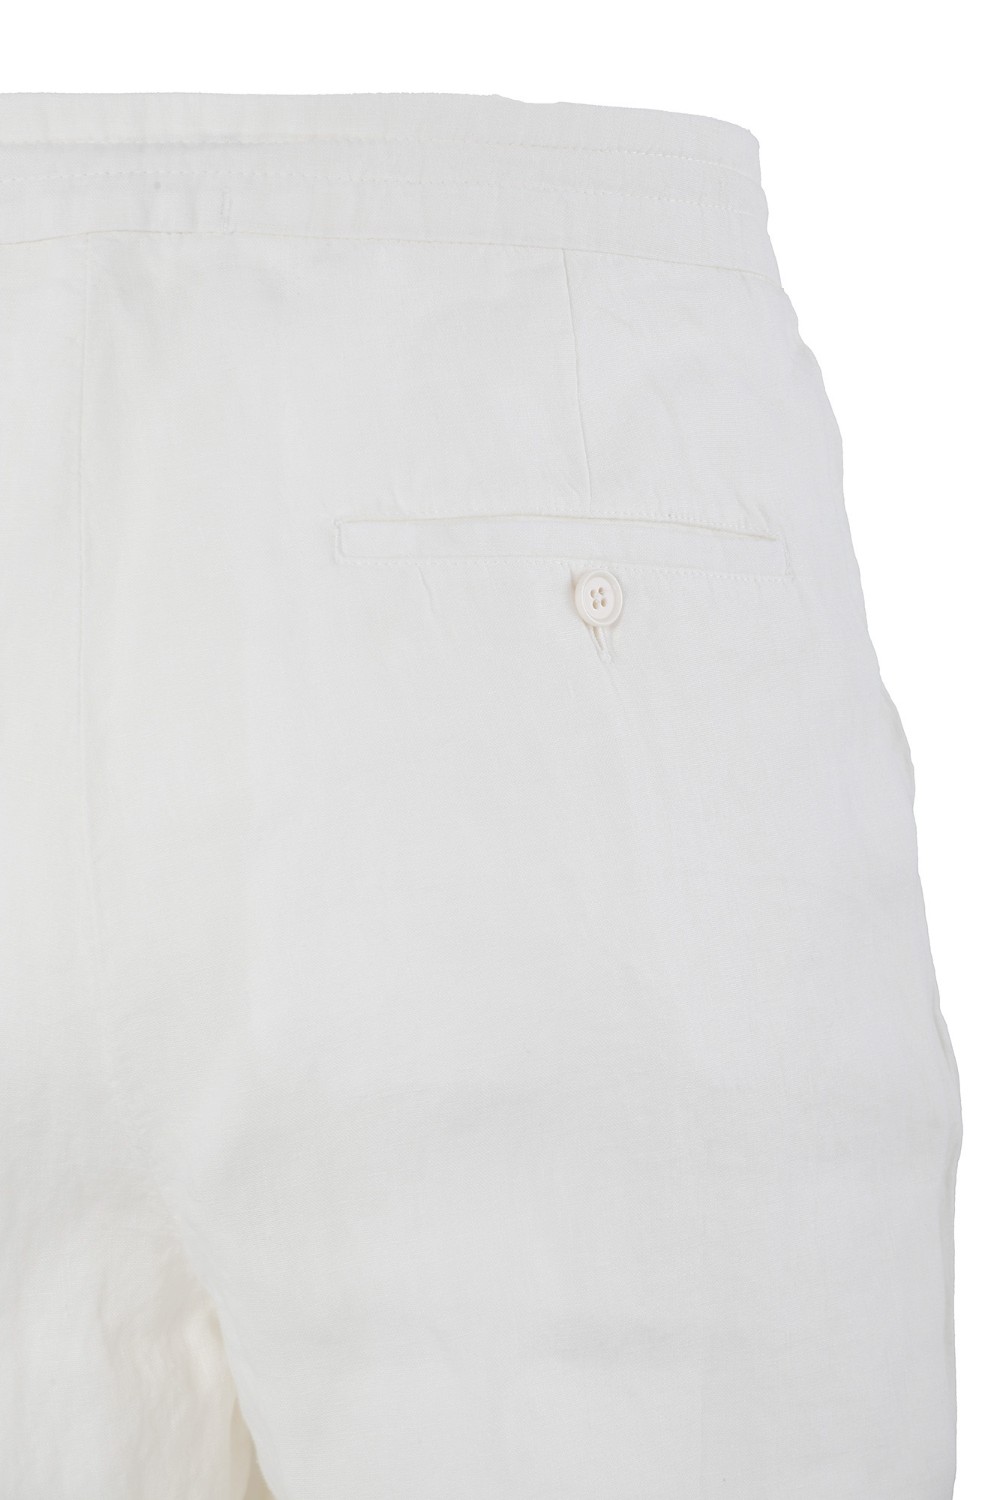 shop ZEGNA  Pantalone: Zegna pantaloni in lino.
Chiusura con zip e bottone.
Tasche laterali americane.
Tasche posteriori a filetto.
Composizione: 100% lino.
Made in Romania.. UDI32A7 TT11-N01 number 1569058